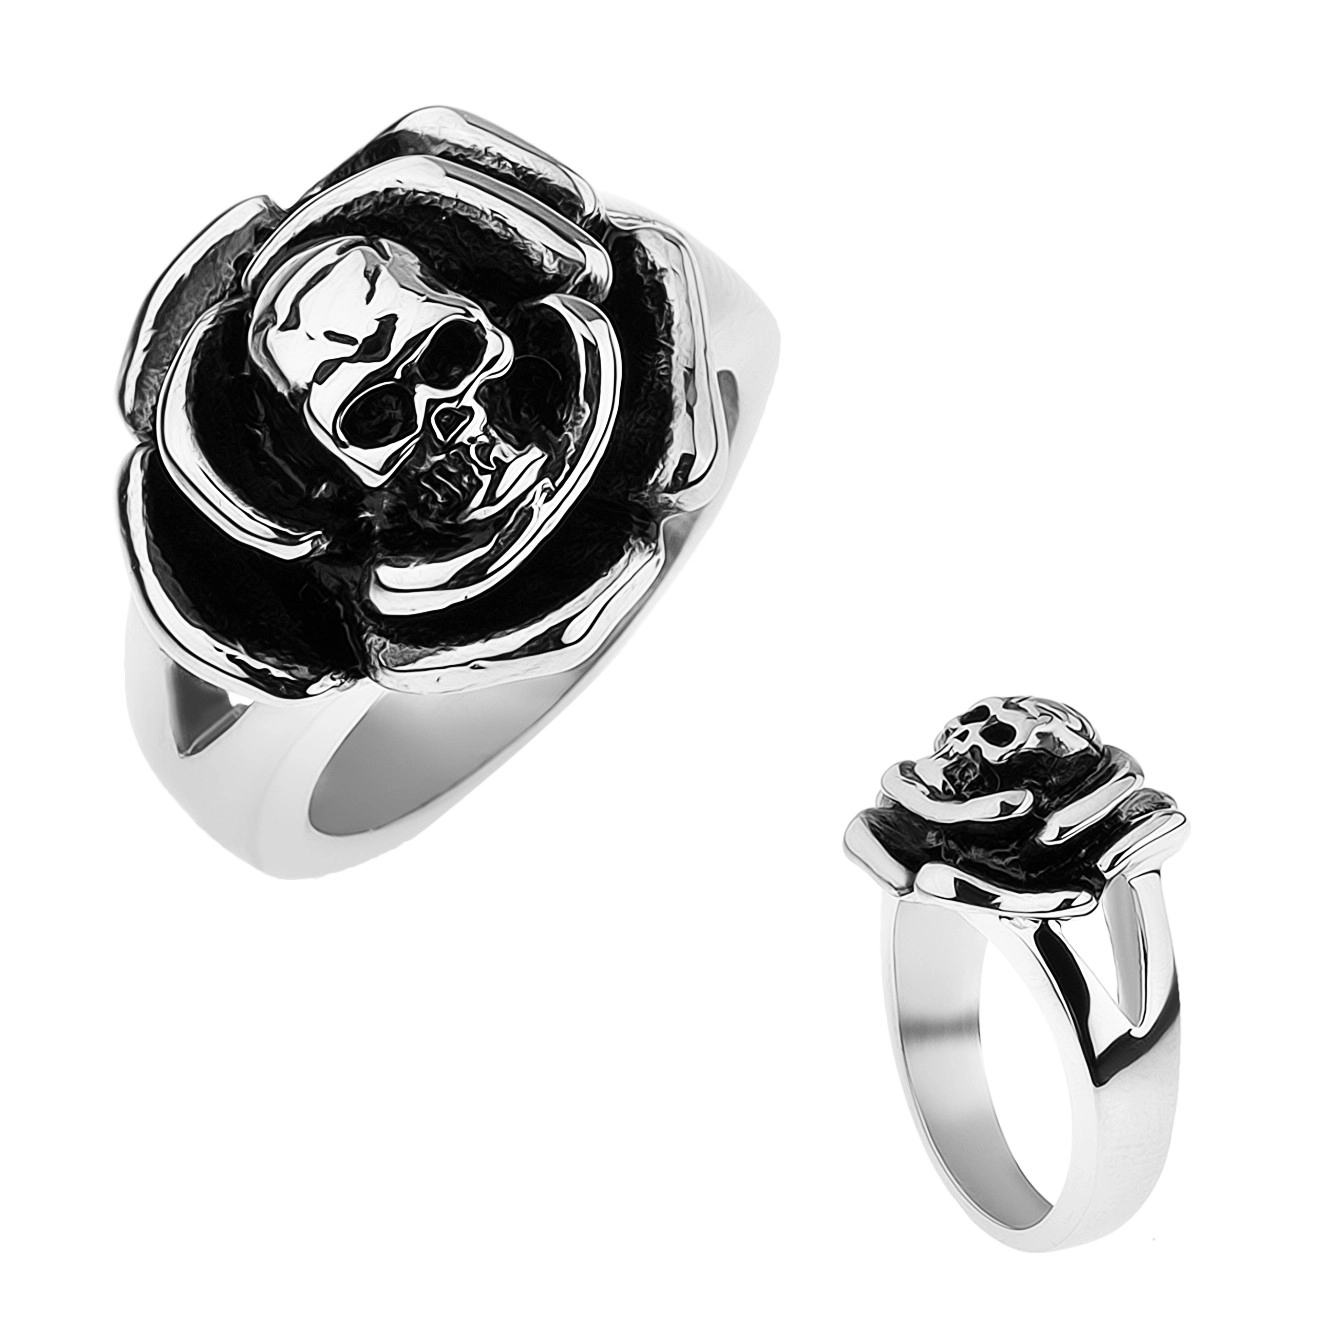 Patinovaný oceľový prsteň, ruža s lebkou v strede, rozdvojené ramená - Veľkosť: 63 mm